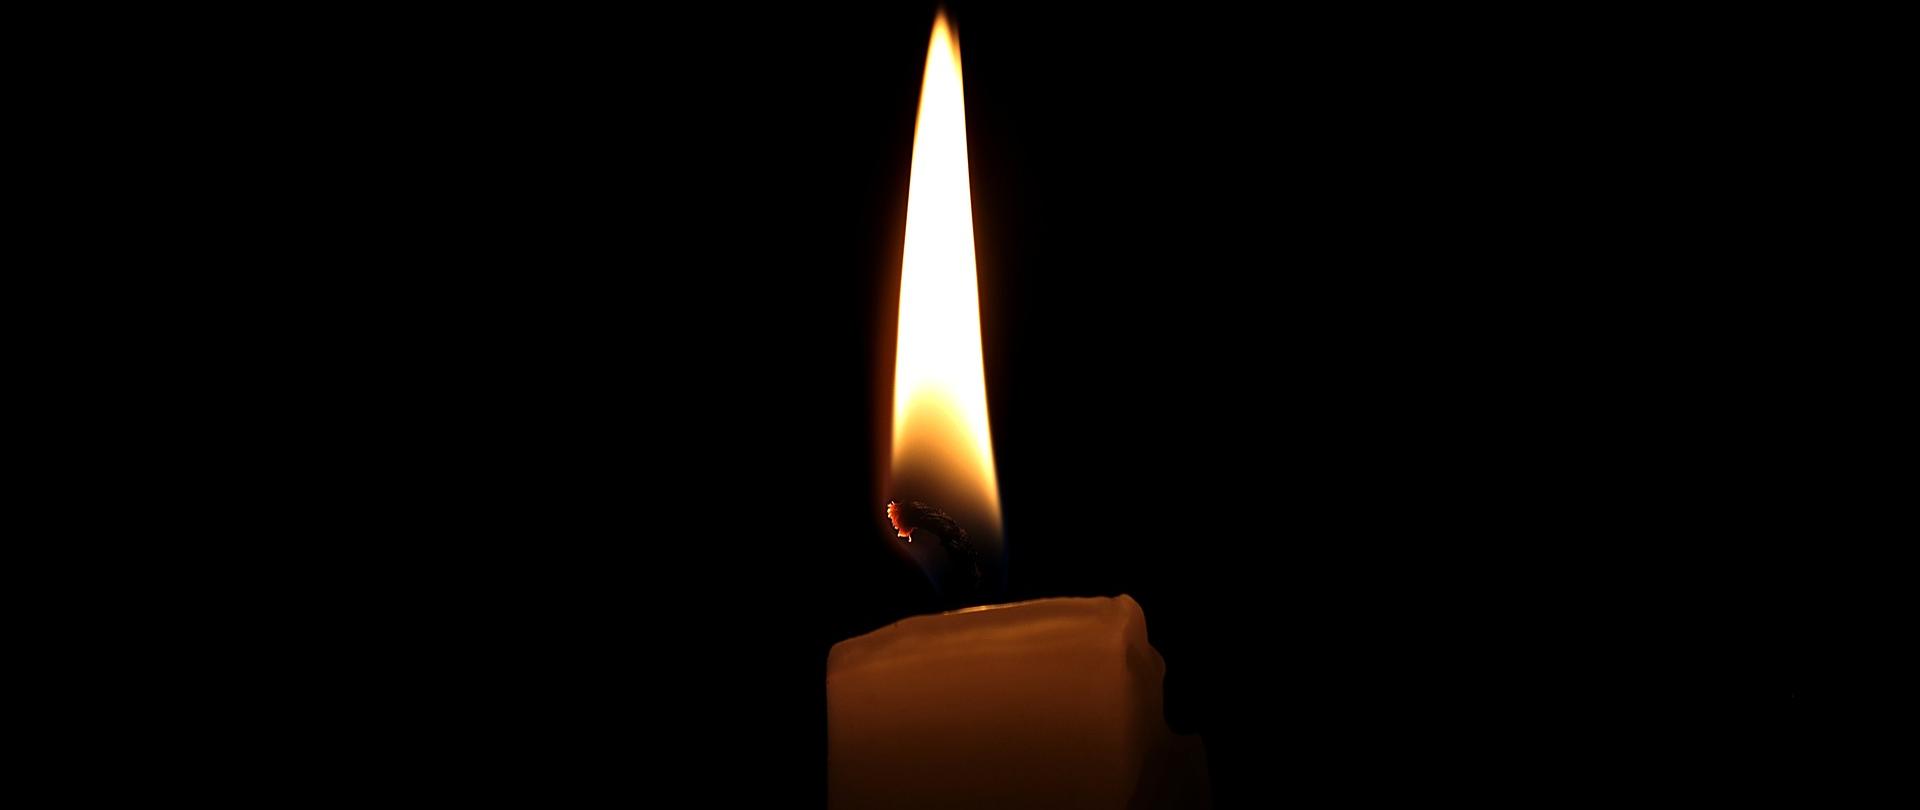 Na zdjęciu w centralnej części kadru świeczka, tlący się płomień. Świeczka jest jasnego koloru ale ogień dodaje lekkiego kolorytu żółci. Tło czarne. 